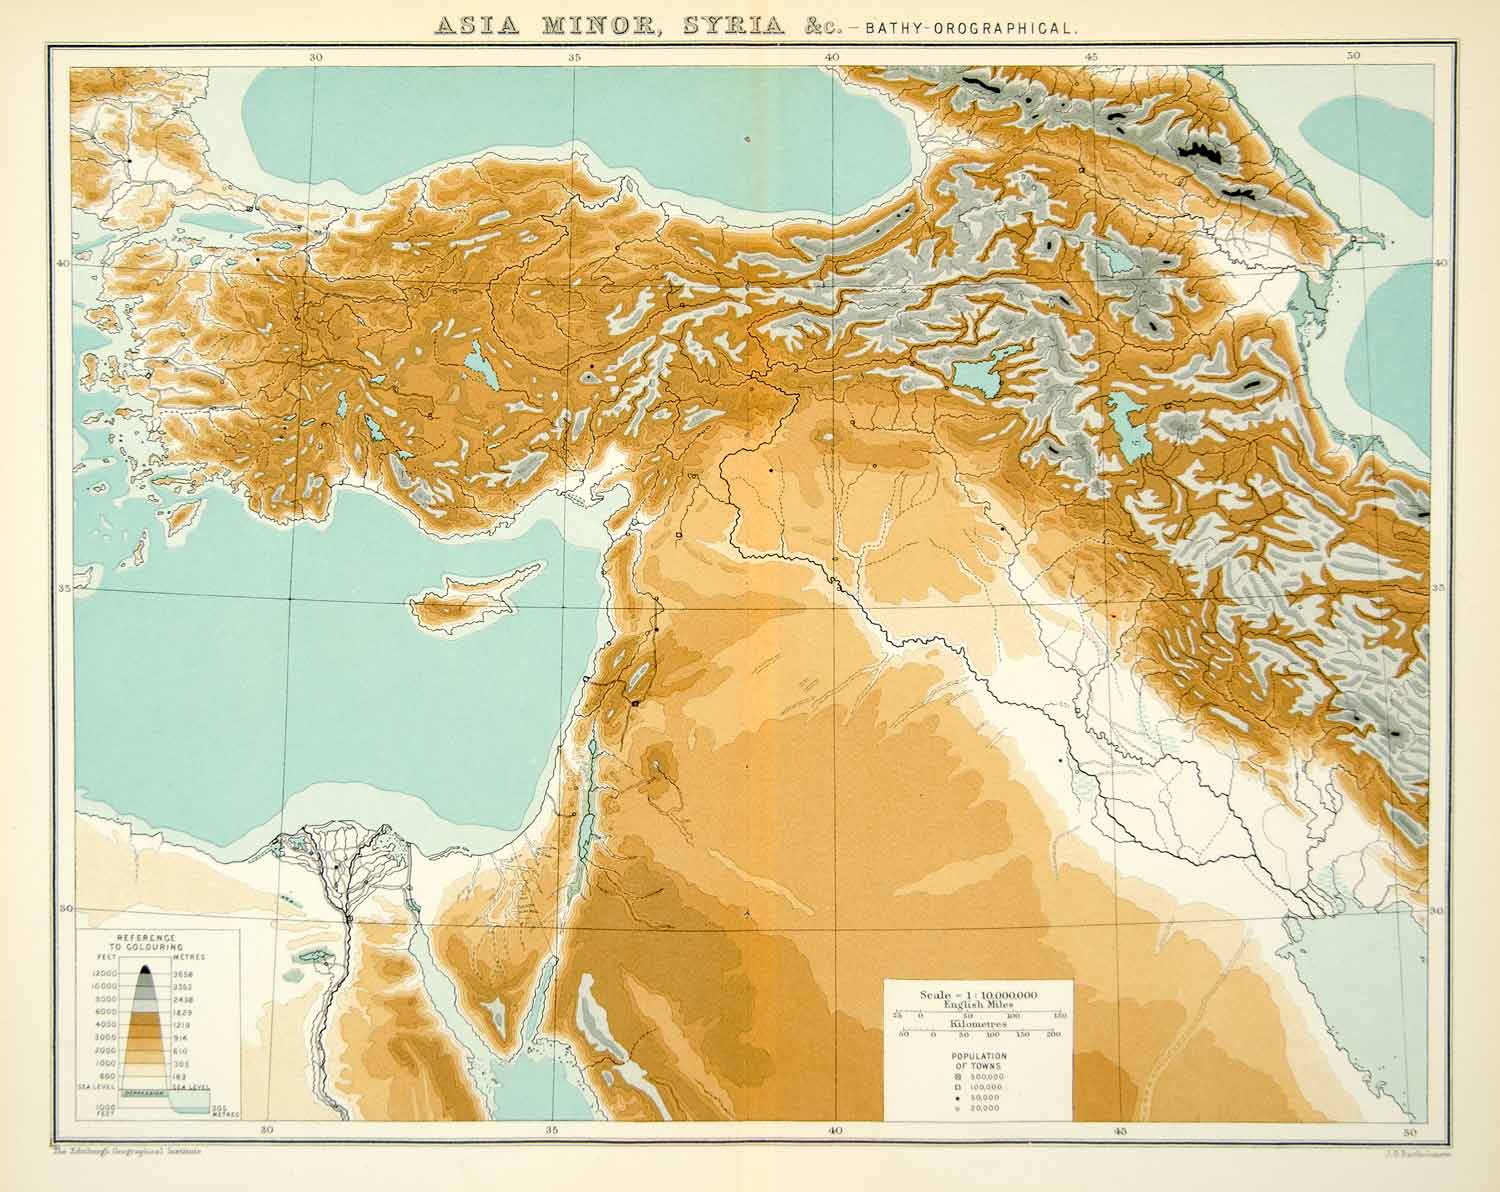 1902 Photolithograph Map Asia Minor Syria Bathyorographical Elevation XGAE8